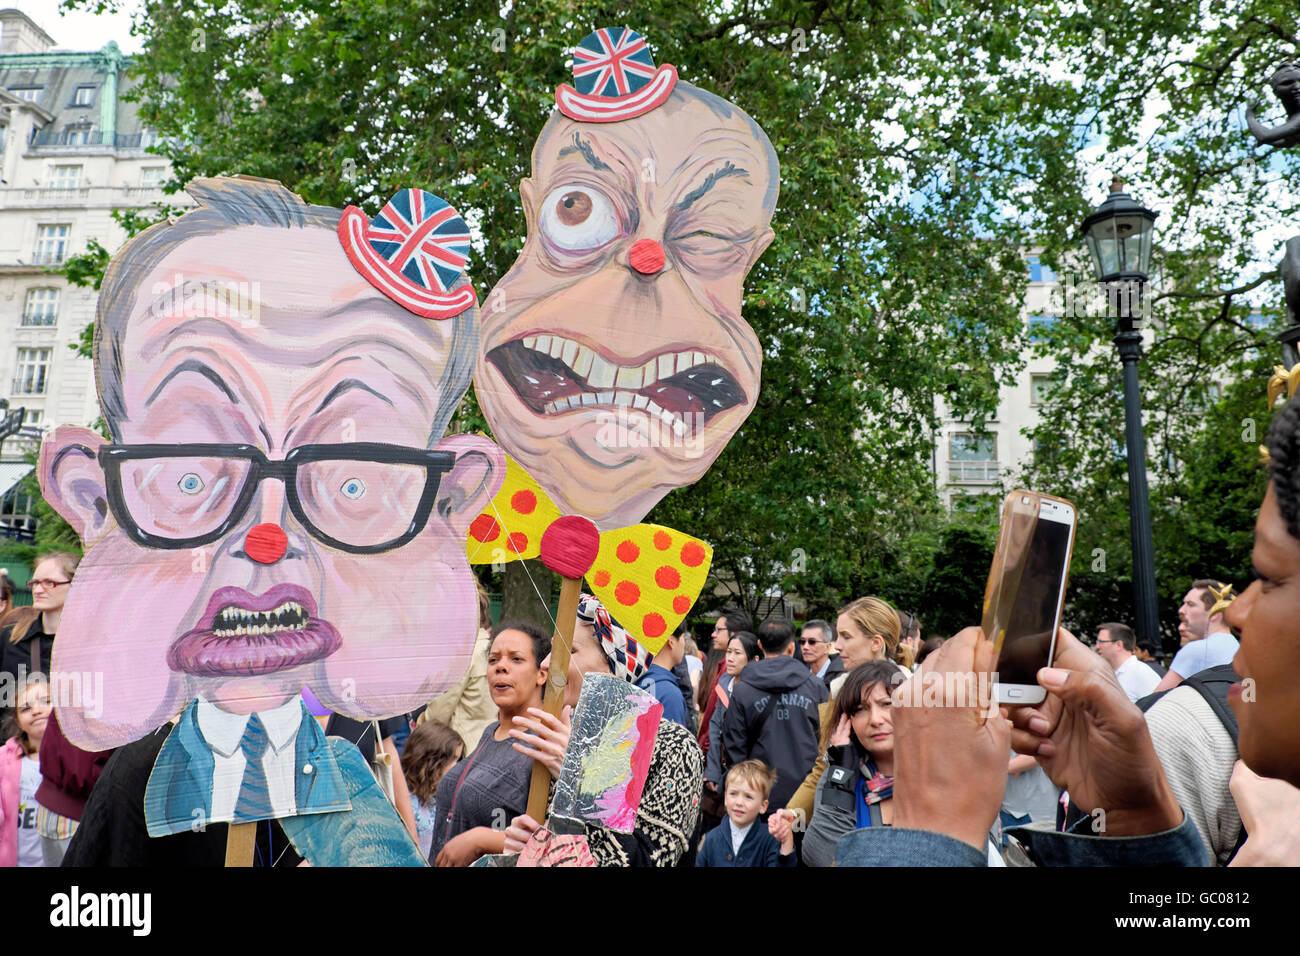 Michael Gove & Nigel Farage caricature signes en la protestation anti Brexit le 2 juillet 2016 à Londres Angleterre 23 juin 2016 KATHY DEWITT Banque D'Images